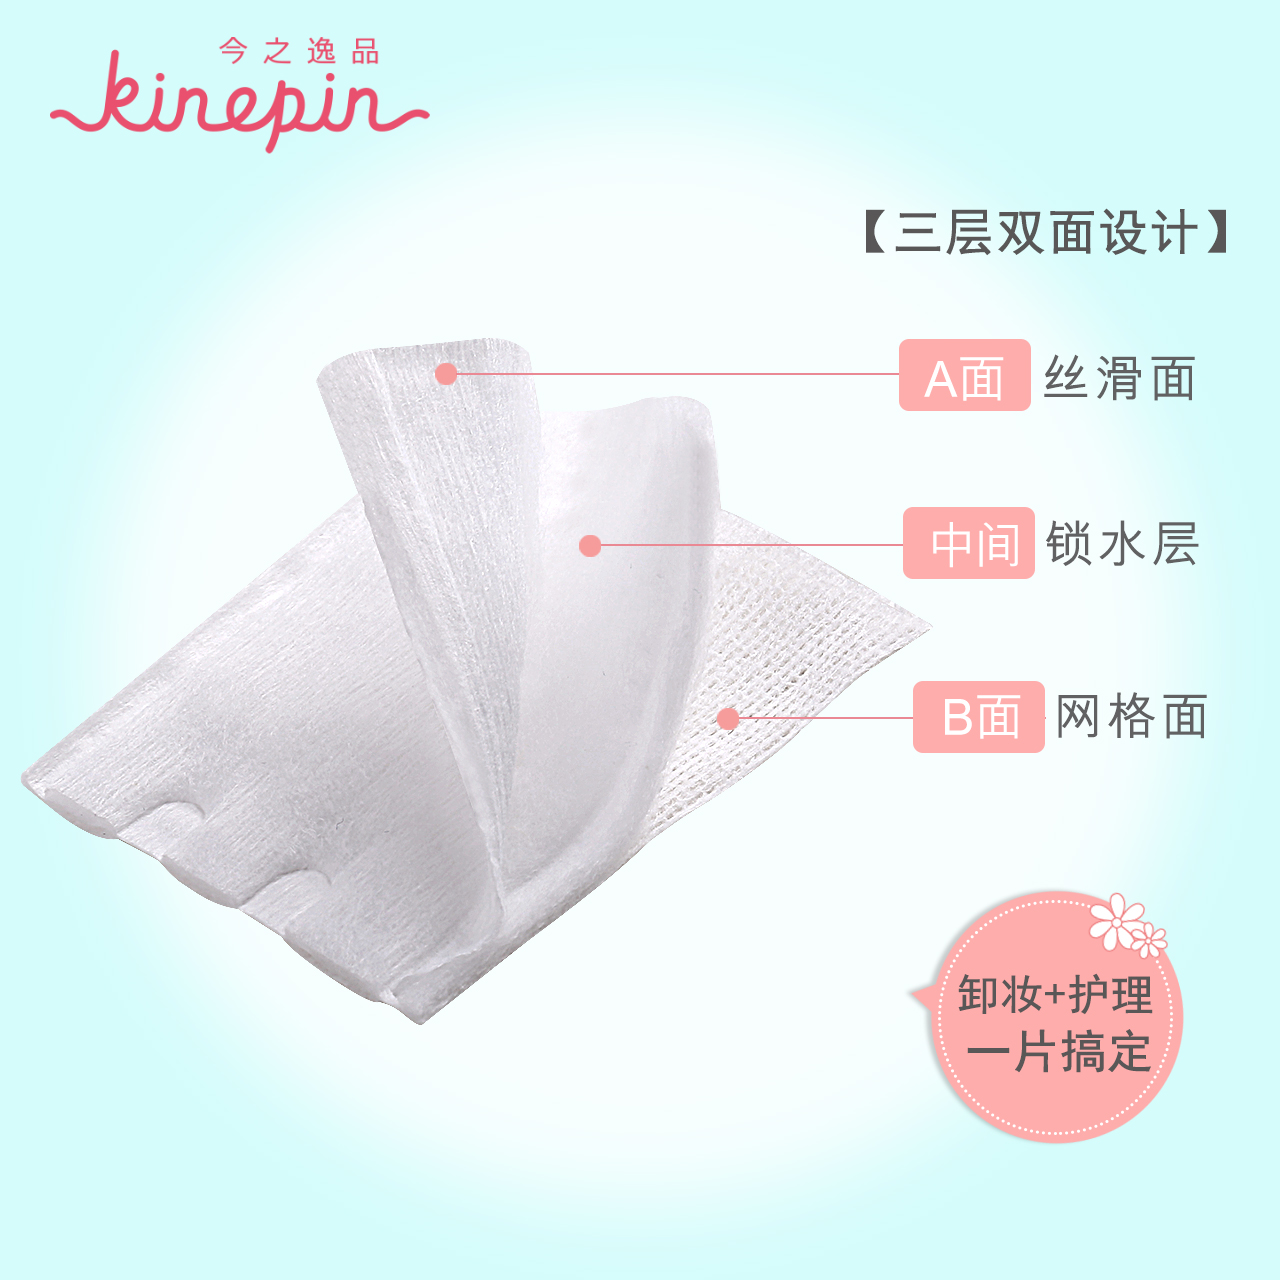 KINEPIN/今之逸品细纹压边双面双效 化妆棉 卸妆棉 美容工具厚薄产品展示图4